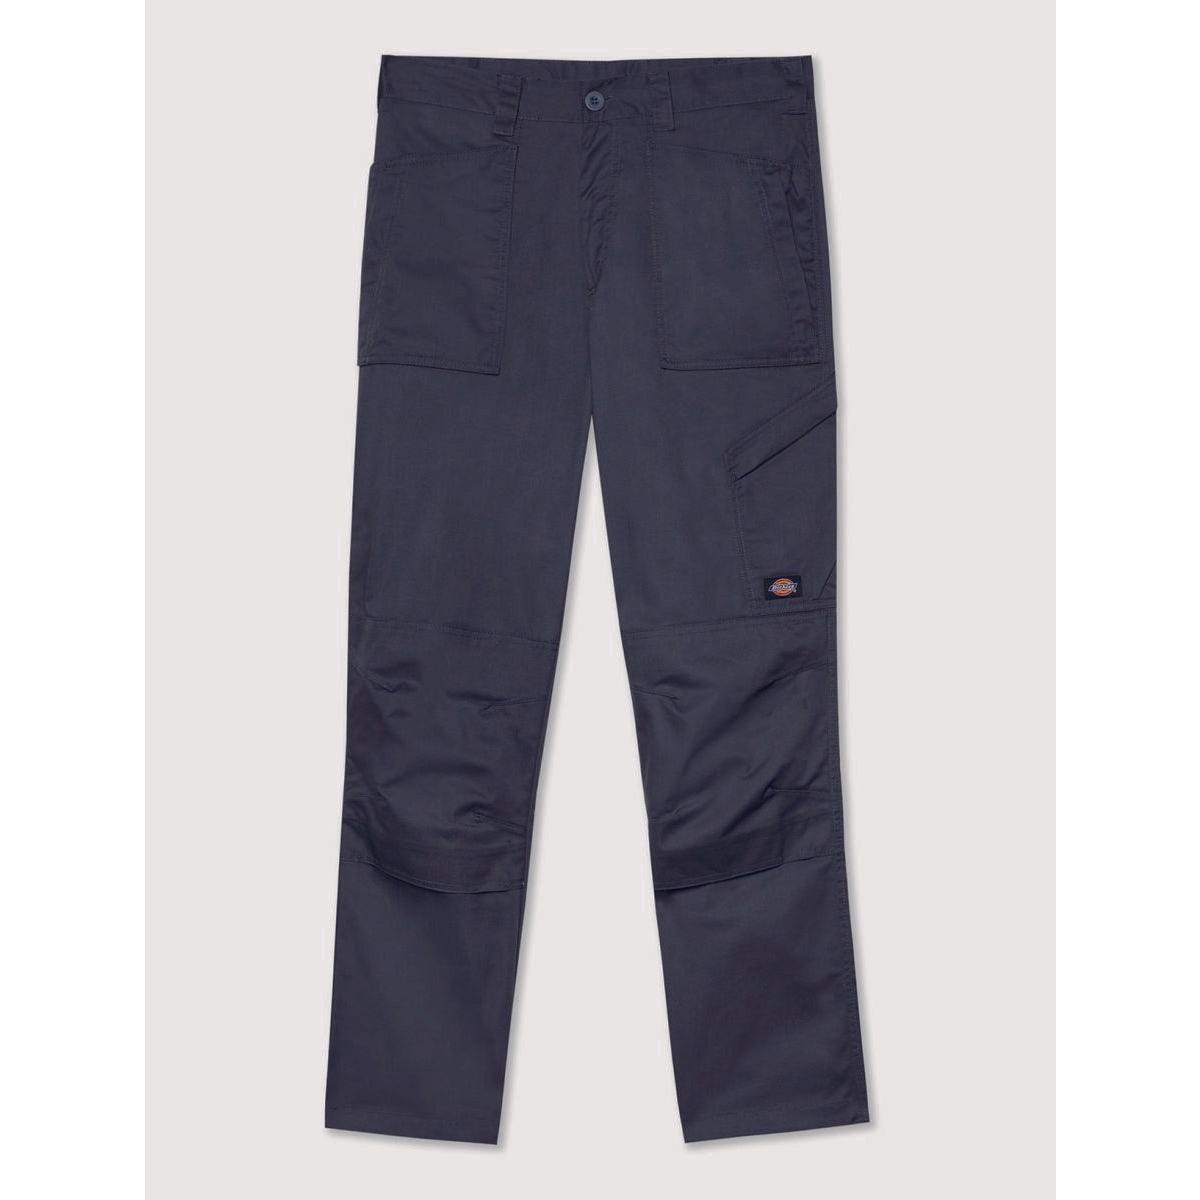 Pantalon de travail Action Flex gris - Dickies - Taille 38 5